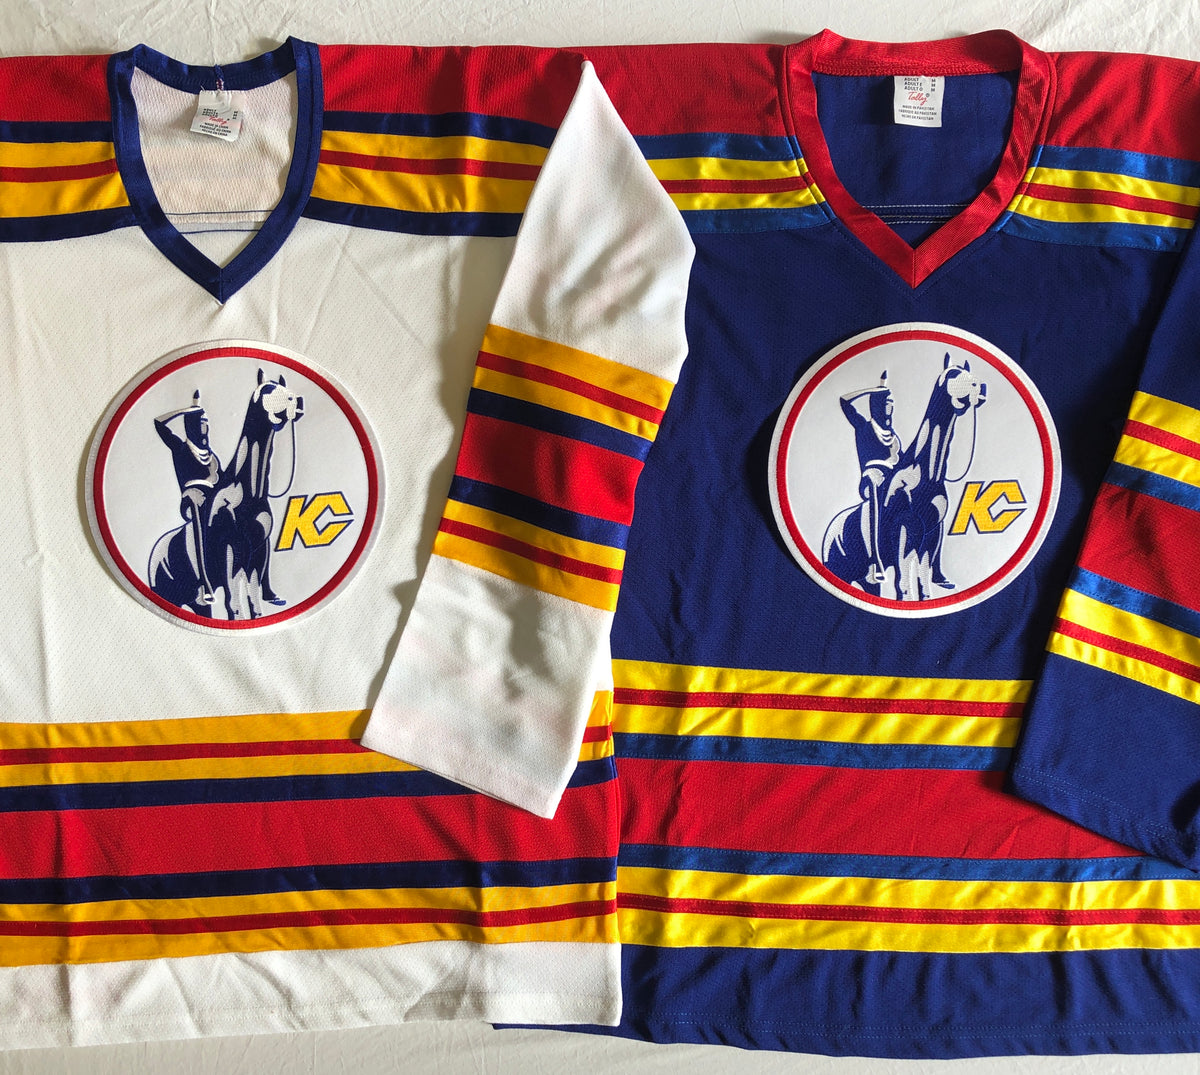 Custom Hockey Jerseys with a Twill Team Canada Logo – Tally Hockey Jerseys